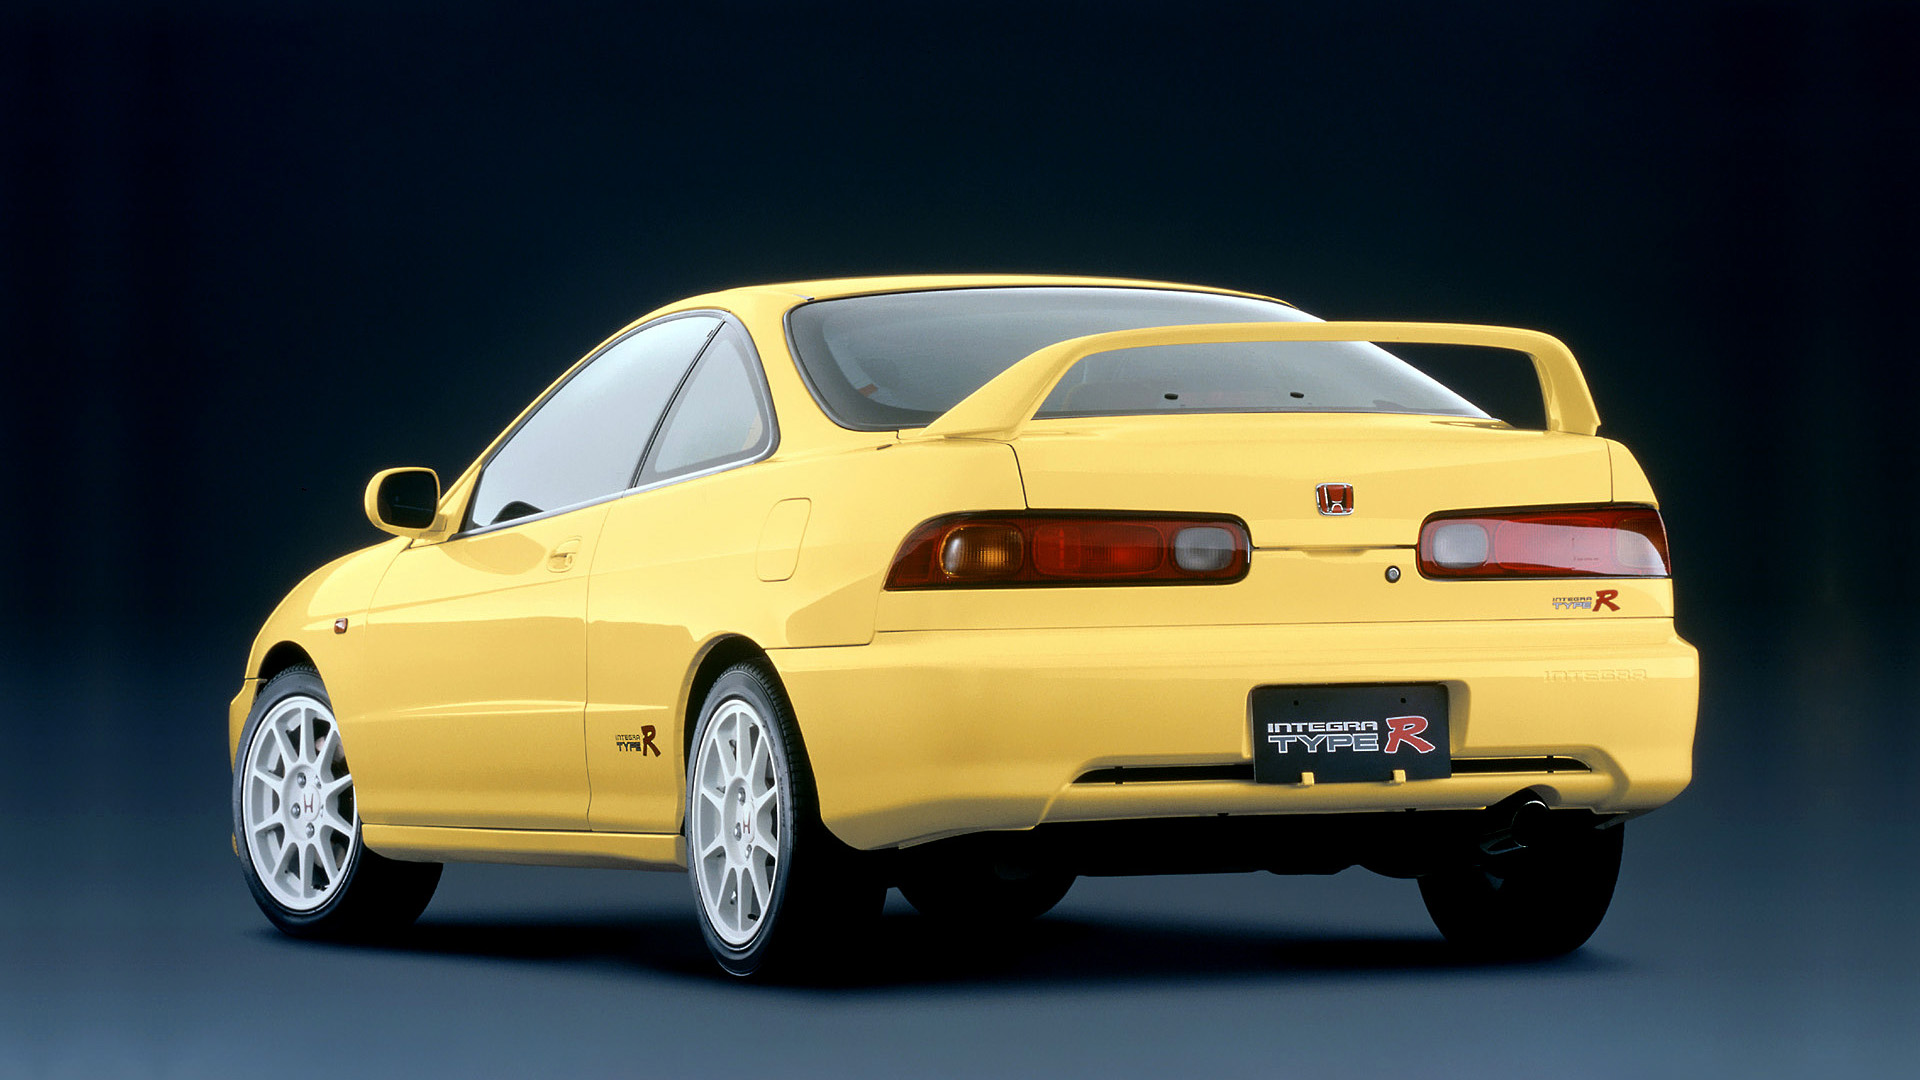  1998 Honda Integra Type R Wallpaper.